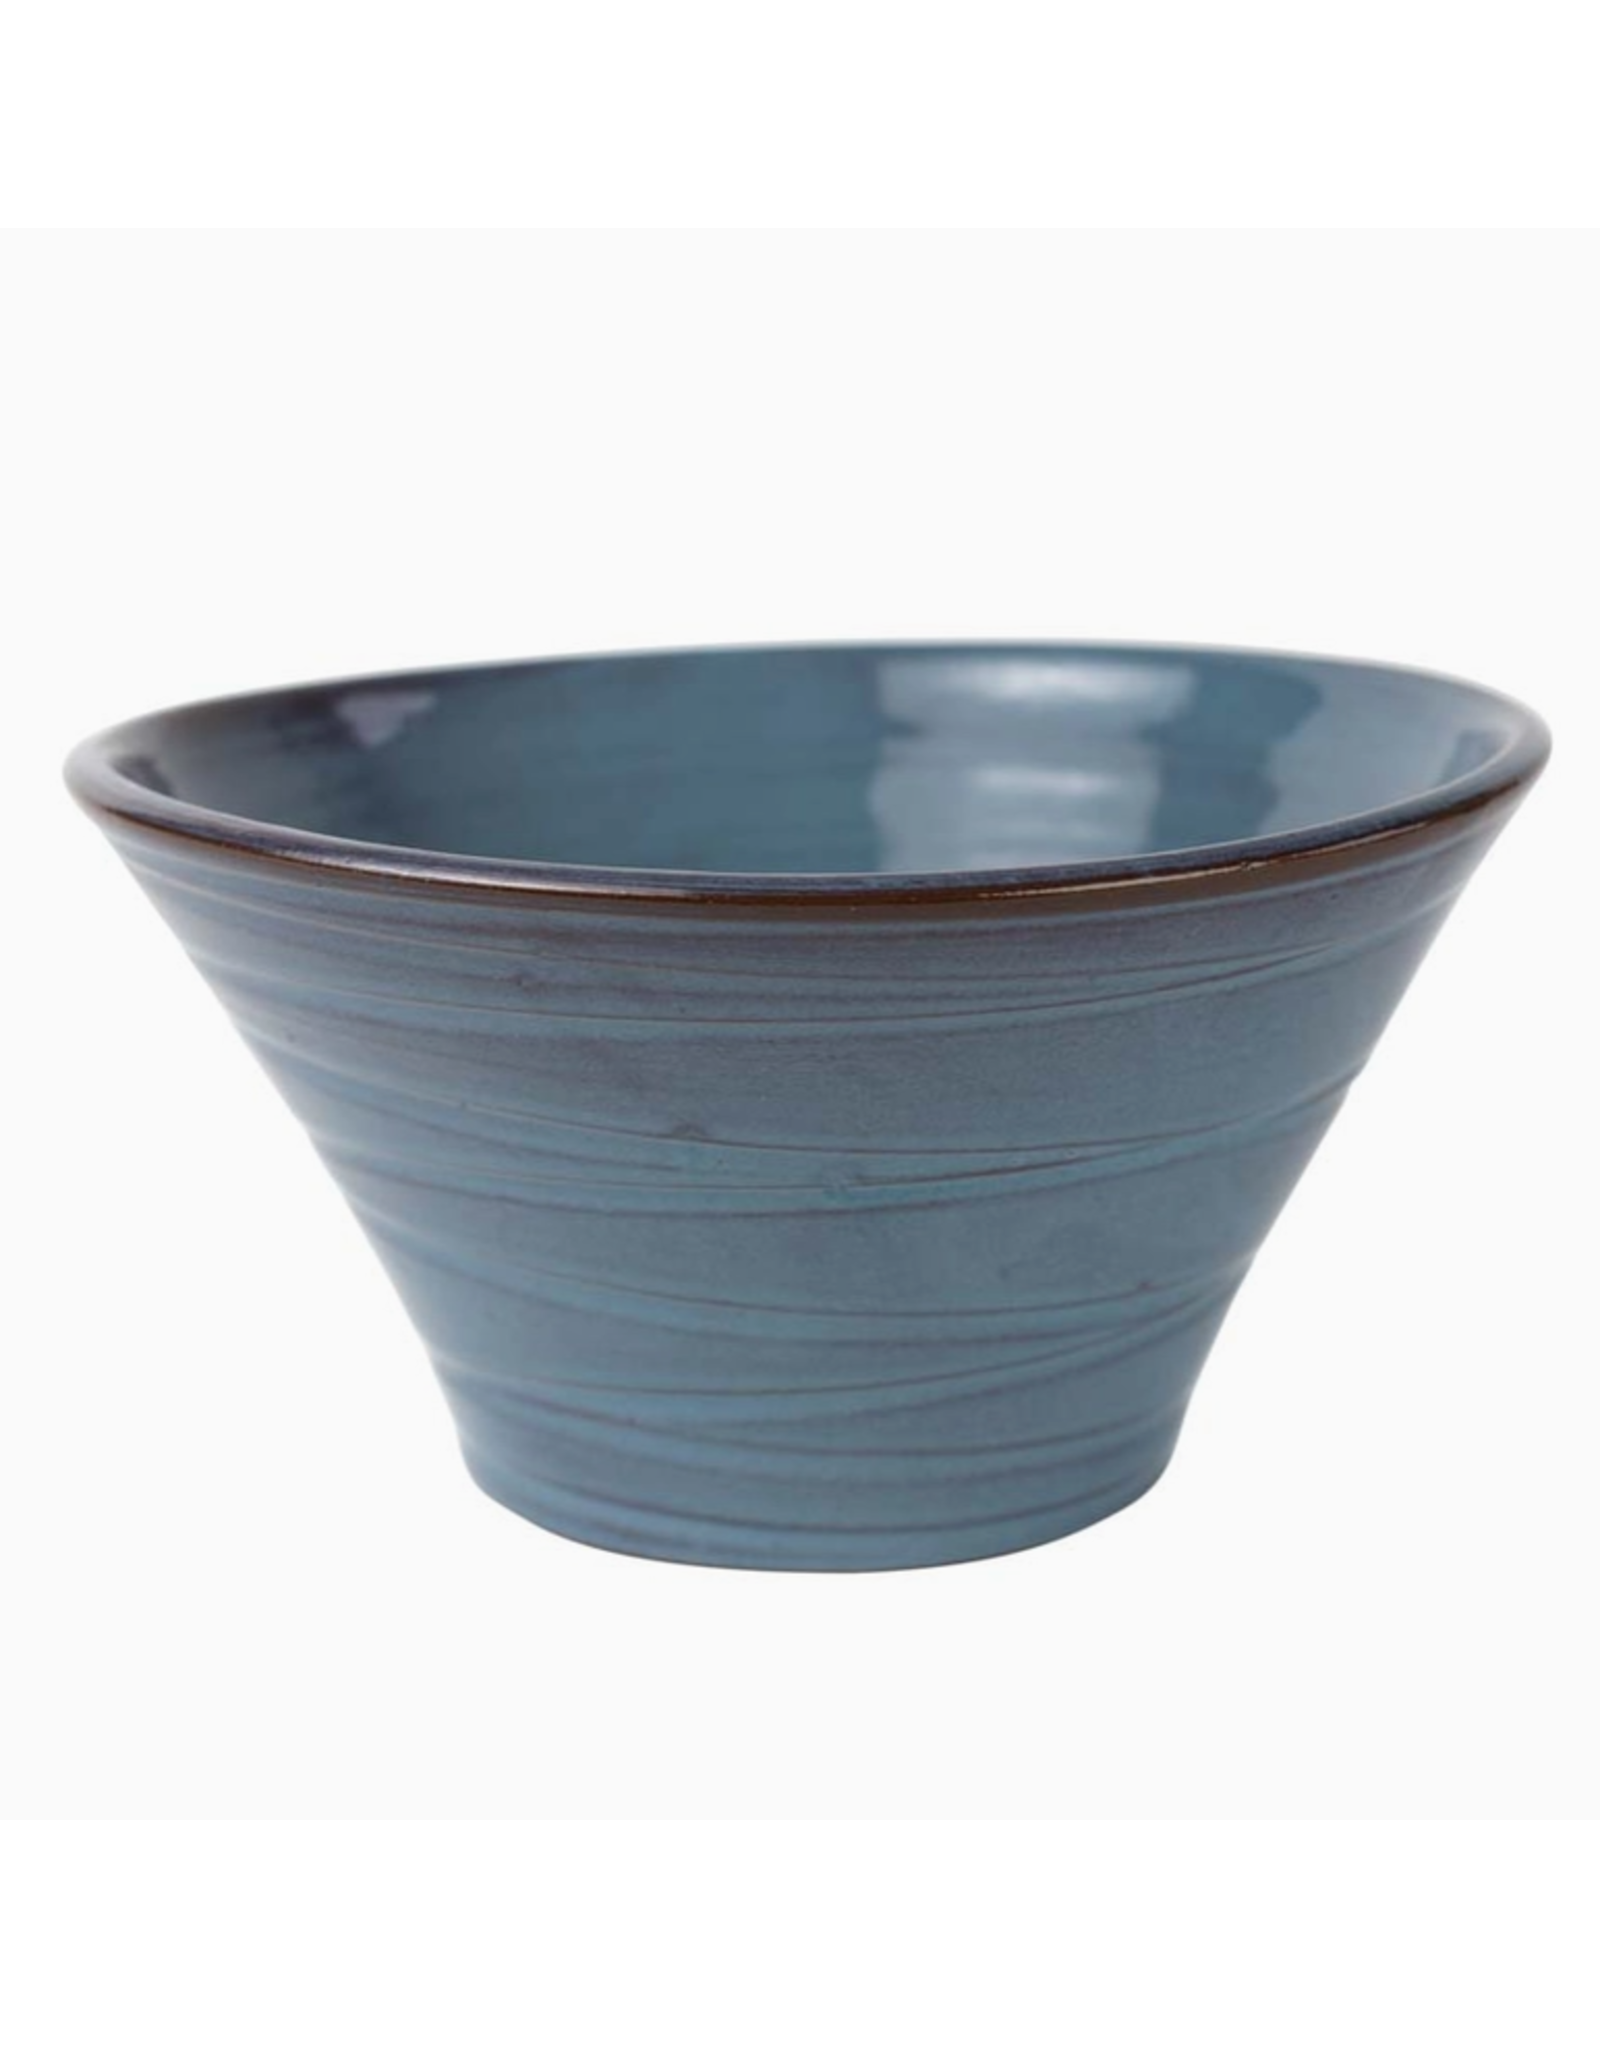 Nepal Lakeside Ceramic Bowl, Nepal